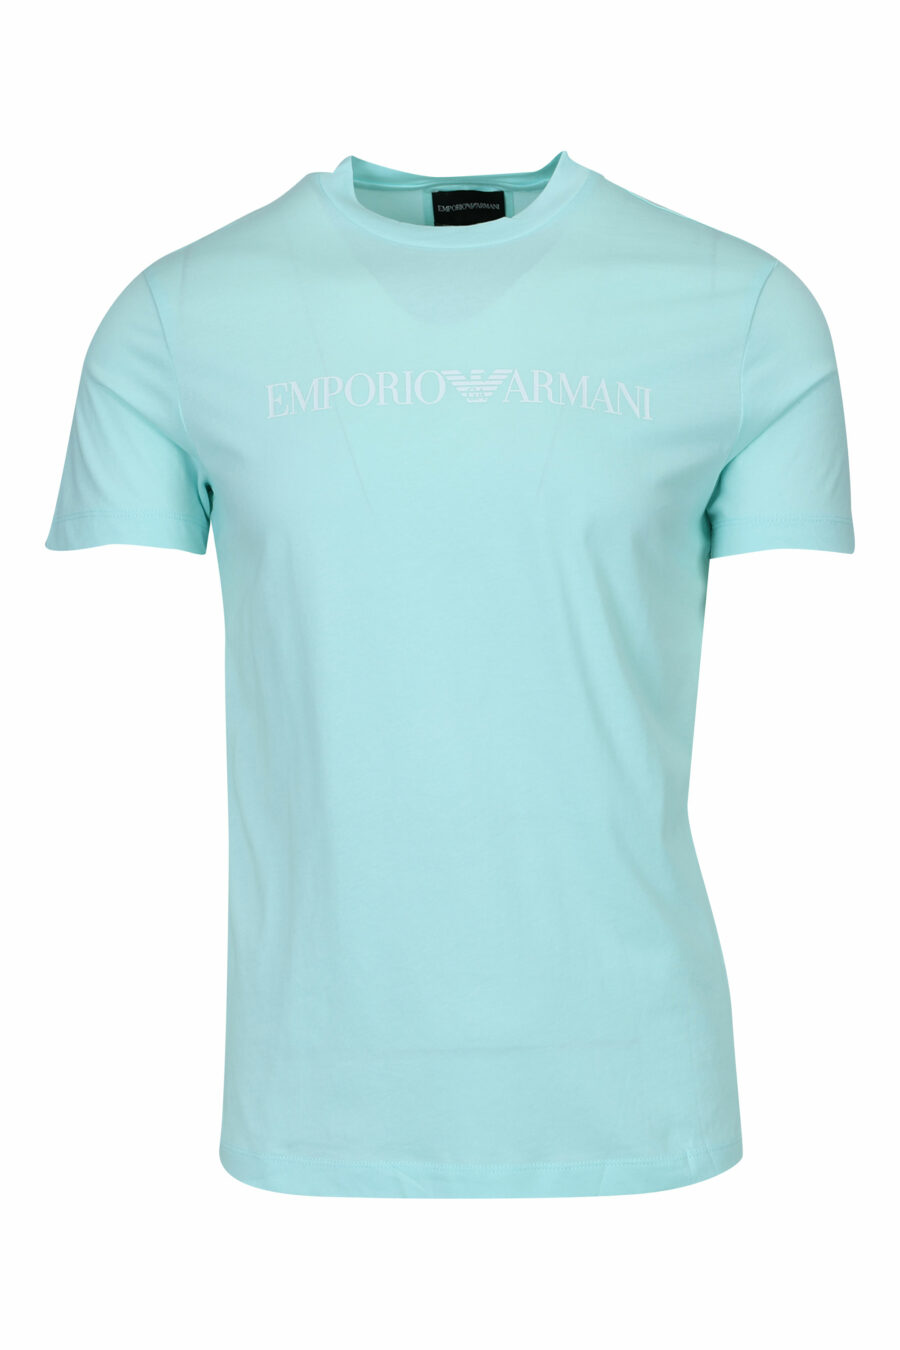 Sky blue T-shirt with "emporio" maxilogo - 8058997257701